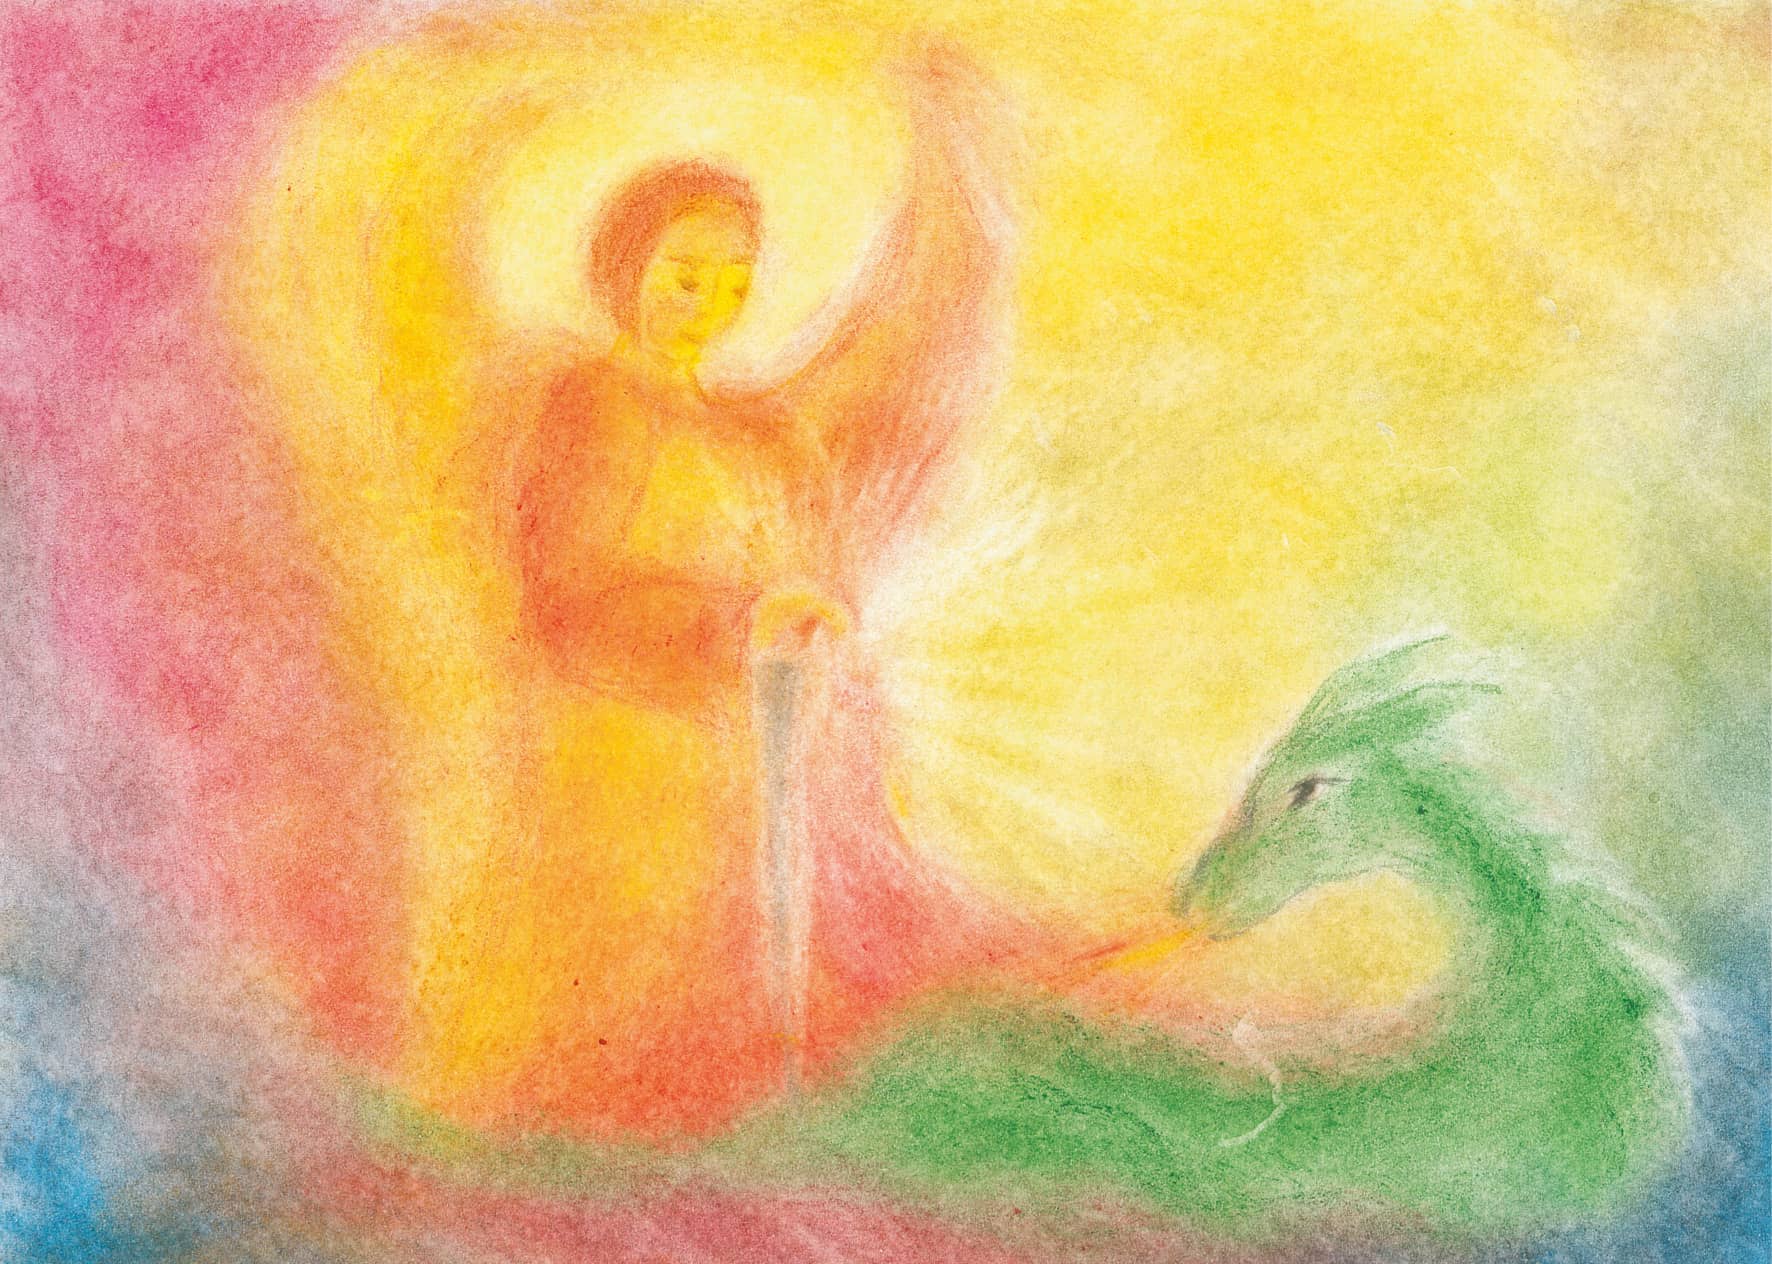 Seccorell Postkarte "Sankt Michael" zeigt den Erzengel im Kampf mit dem Drachen, umgeben von einem Strahlenkranz in dynamischen Seccorell-Farben.